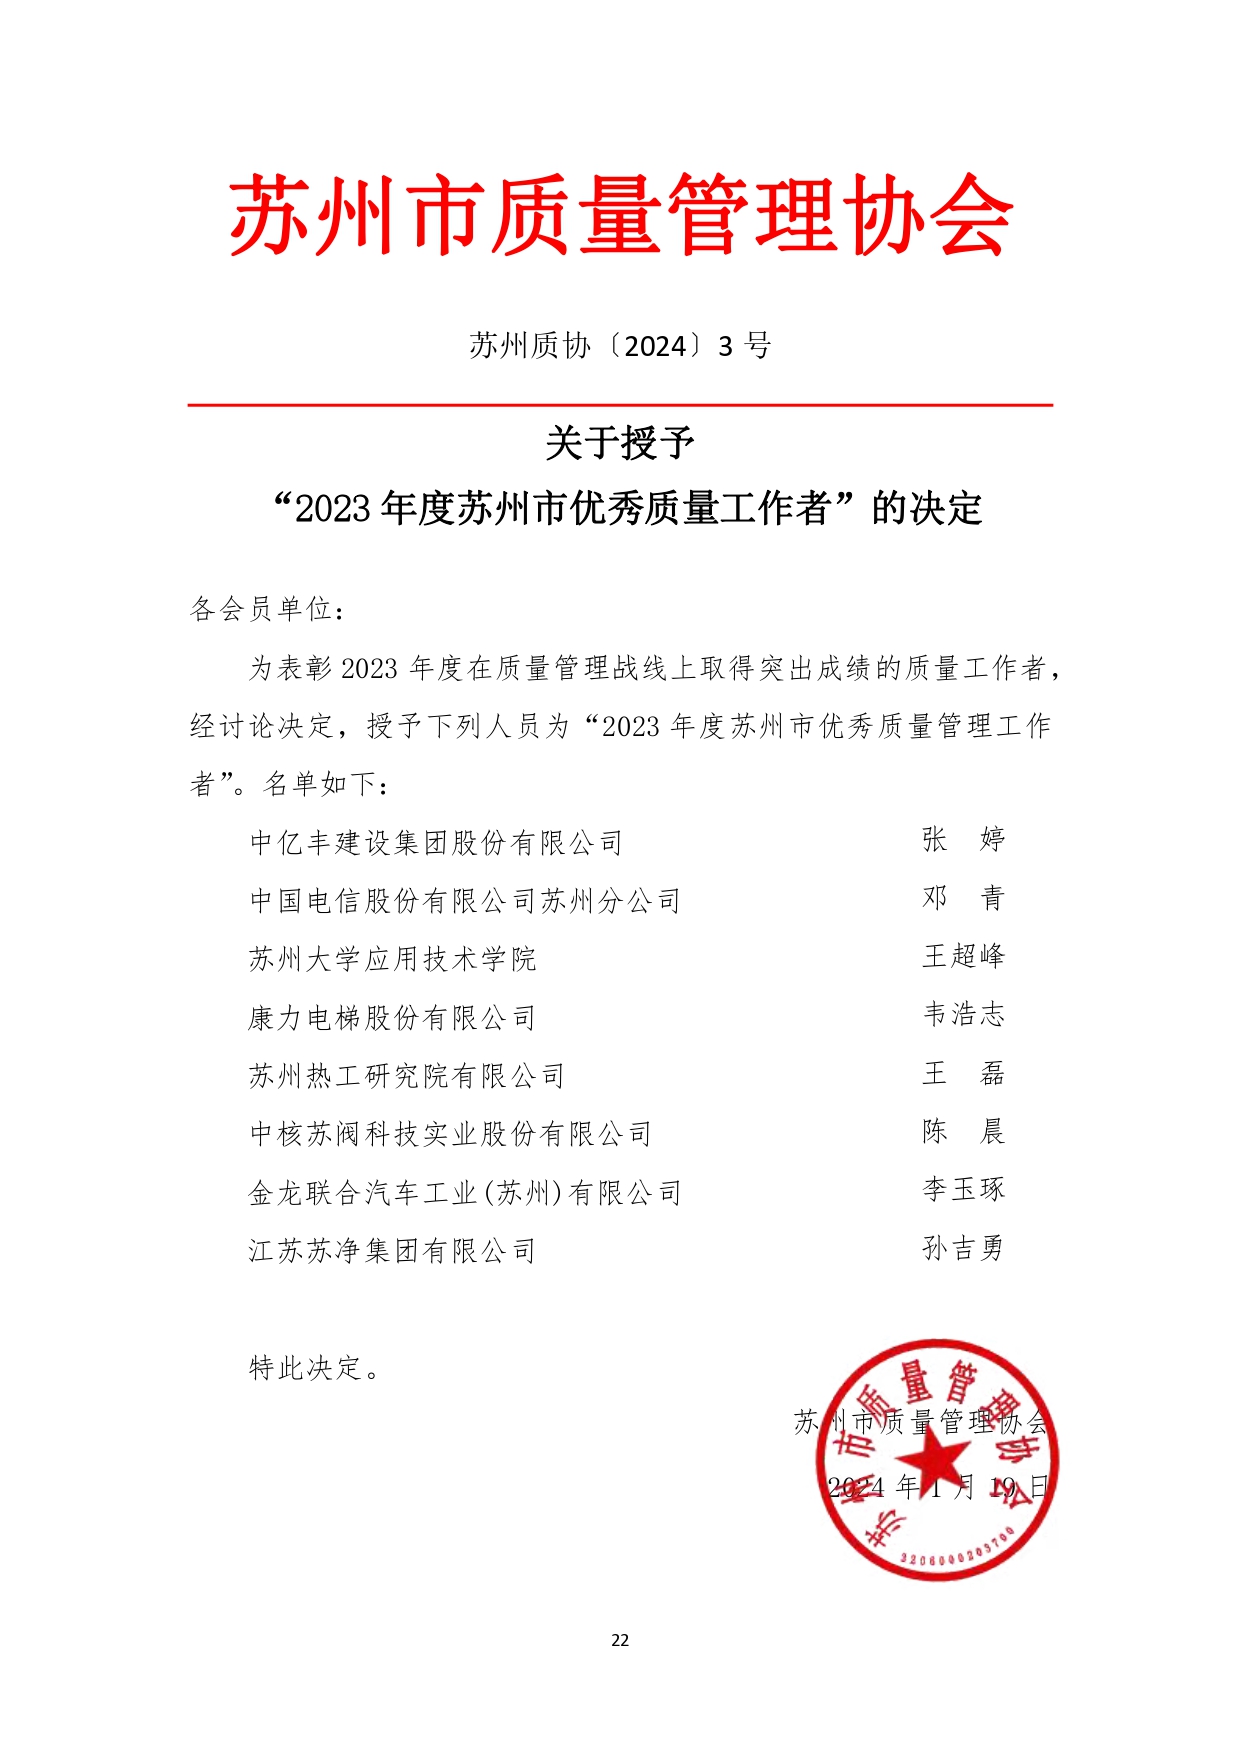 苏州市质量管理协会三届四次会员代表大会文件汇编（1月16日打印版） (修改版)_page-0024.jpg